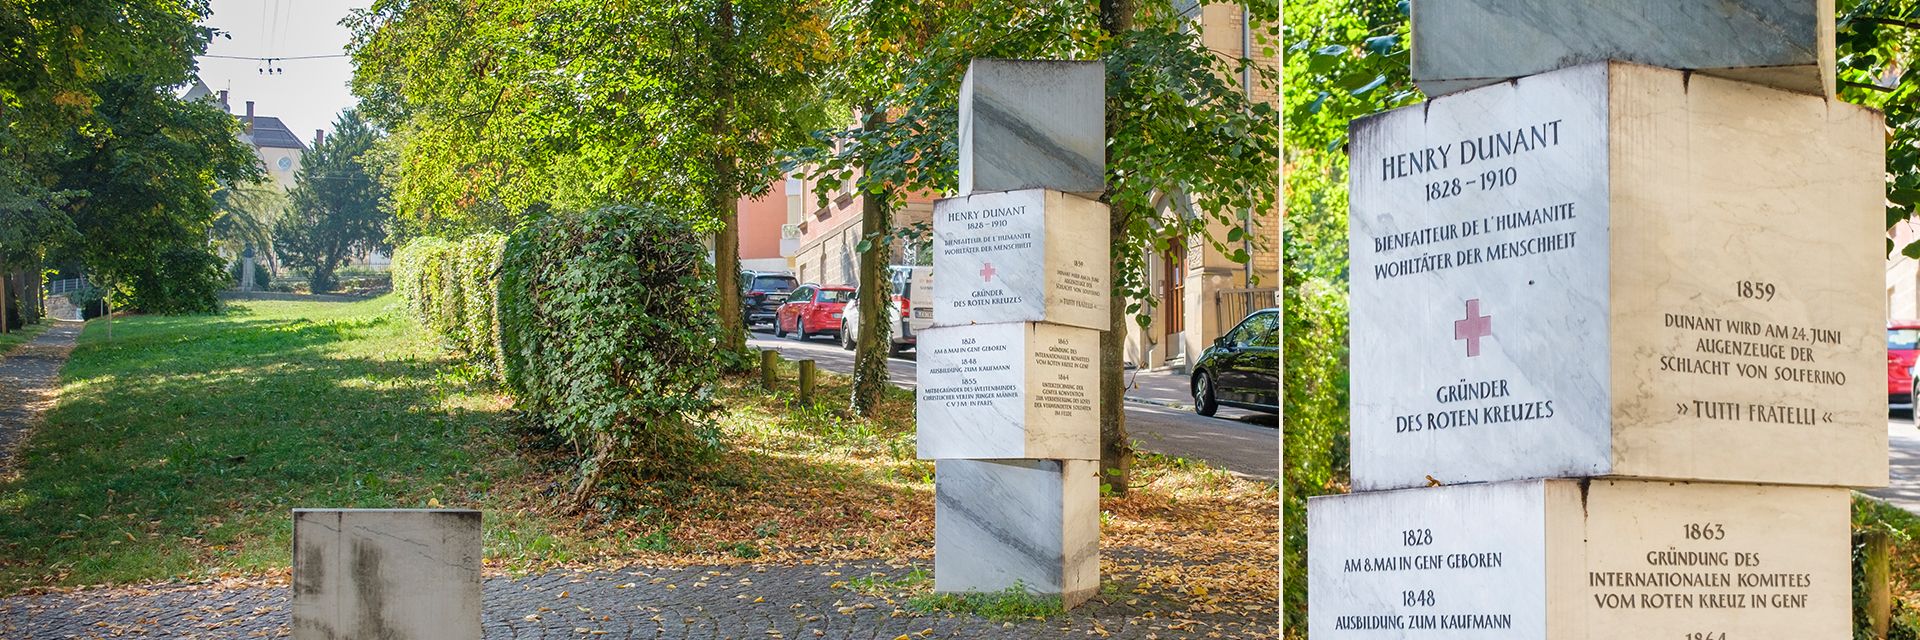 Stele in Stuttgart für den Rotkreuzgründer Henry Dunant 